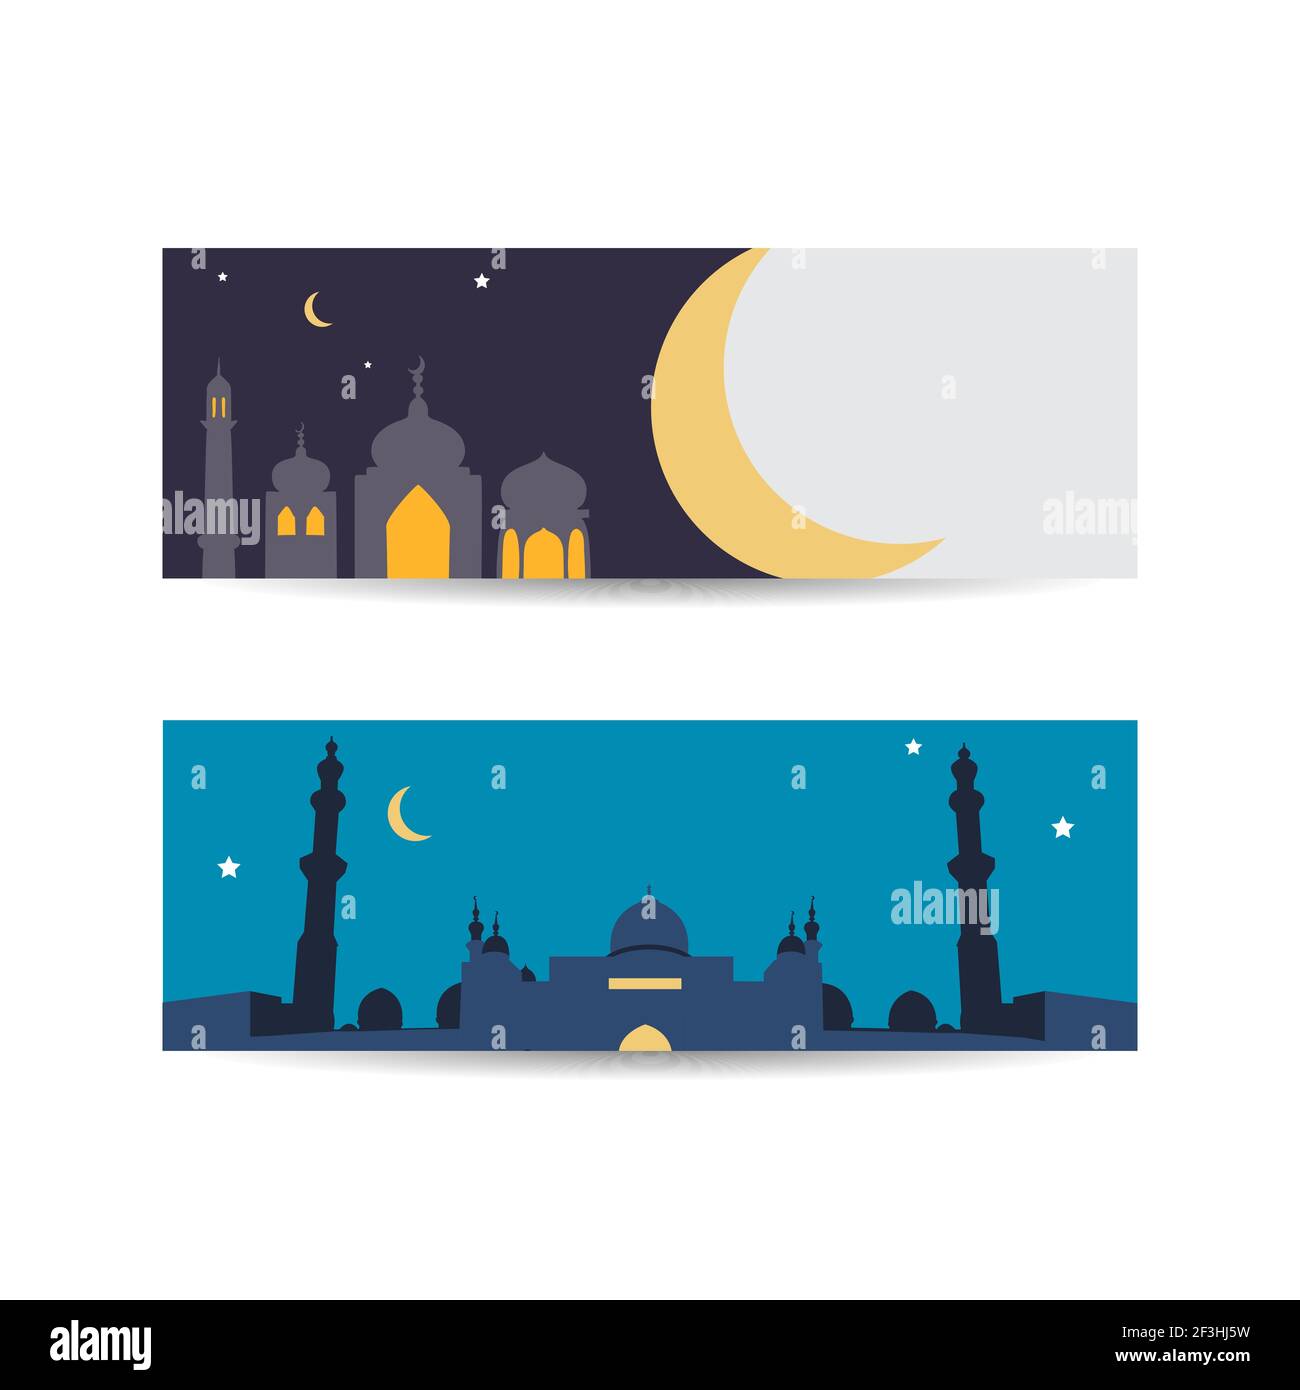 Thiết kế hình nền Ramadan Kareem là lựa chọn hoàn hảo để thể hiện tinh thần của tháng Ramadan. Được thiết kế chuyên biệt với thông điệp Ramadan Kareem và màu sắc trang trọng, các hình nền này sẽ chắc chắn làm hài lòng bạn.